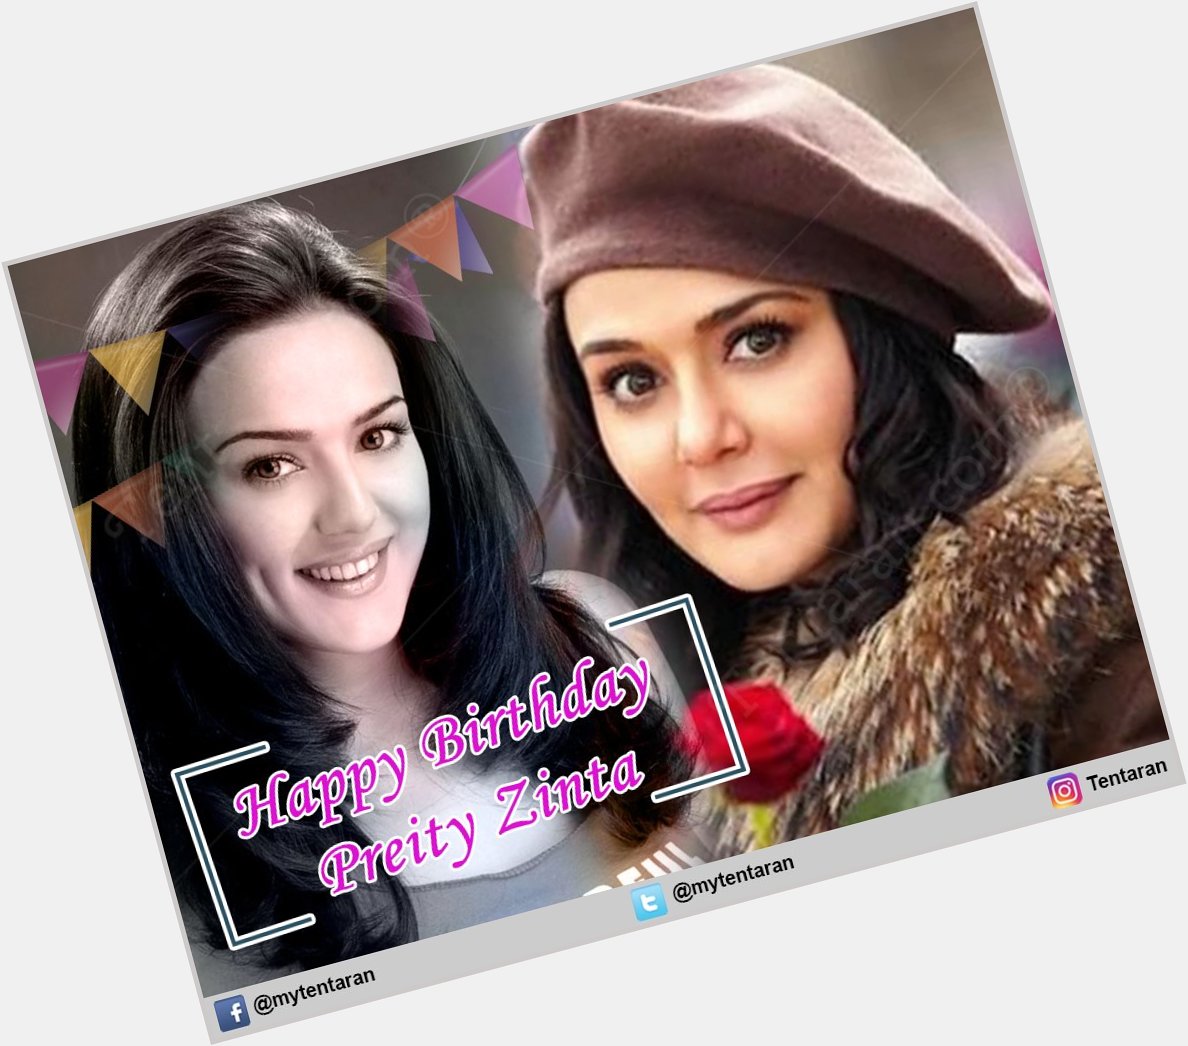 Wishing a very happy birthday to Preity Zinta 
.
.    